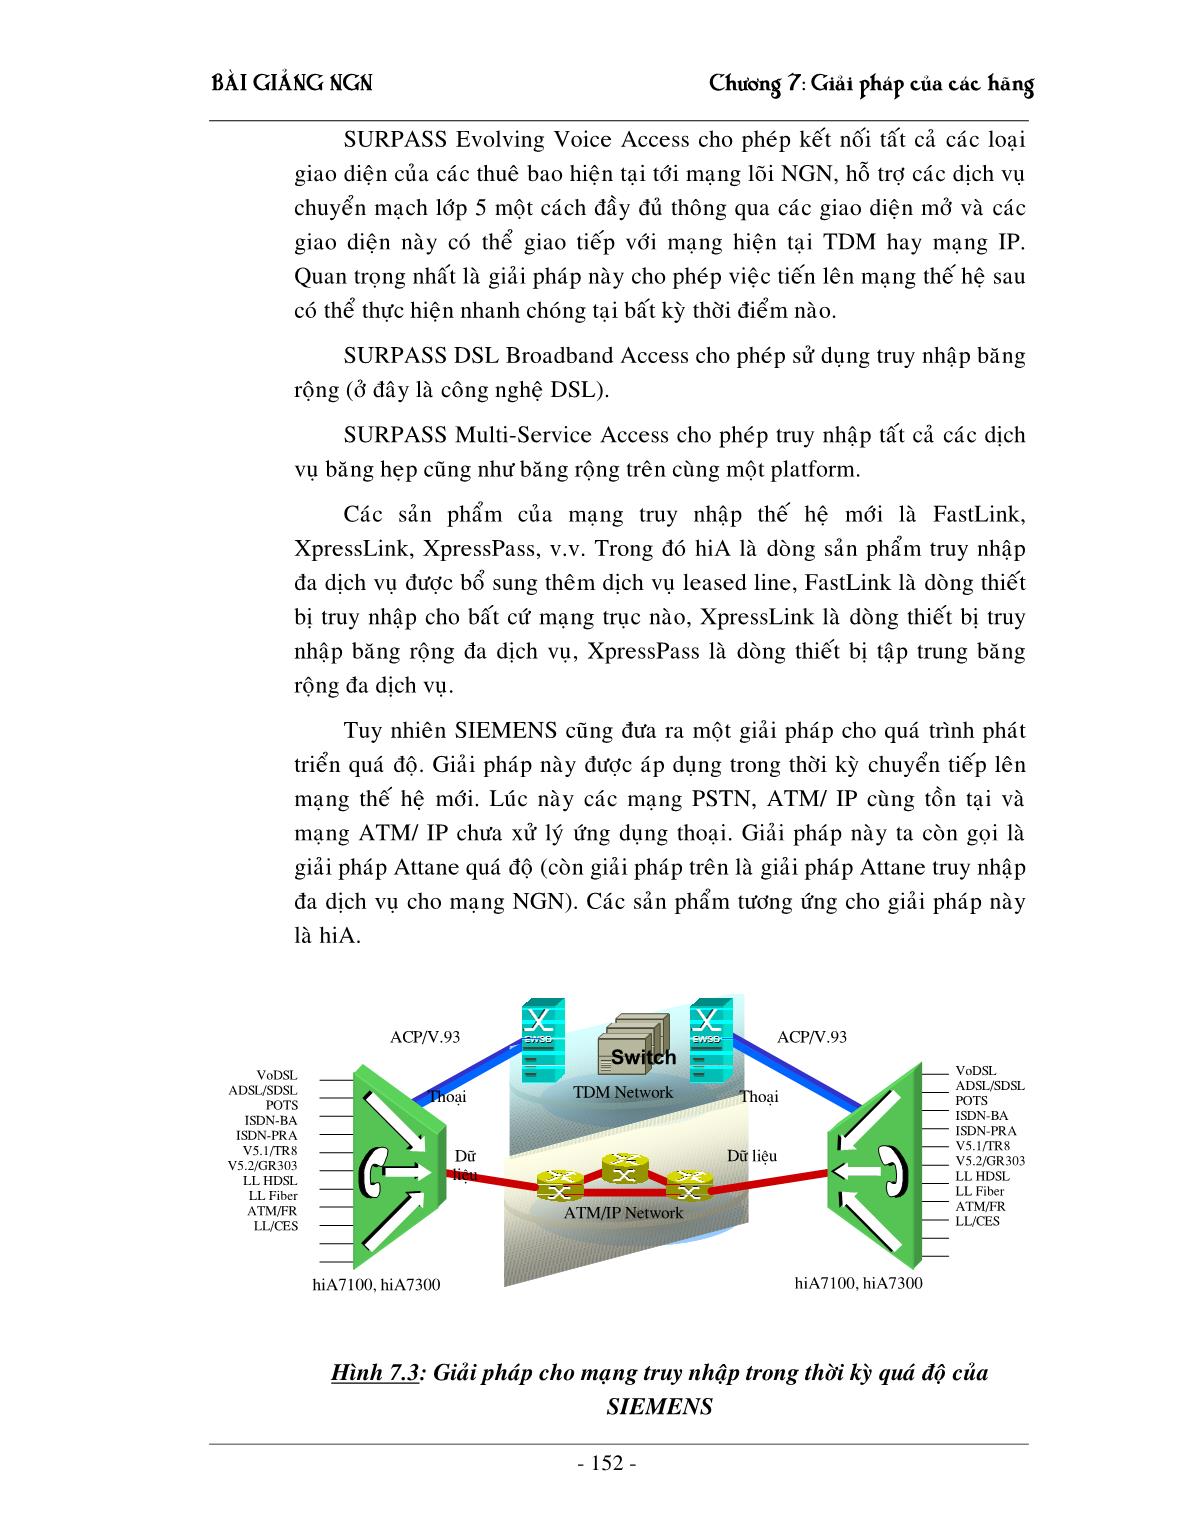 Bài giảng NGN - Chương 7: Giải pháp NGN của các hãng trang 5